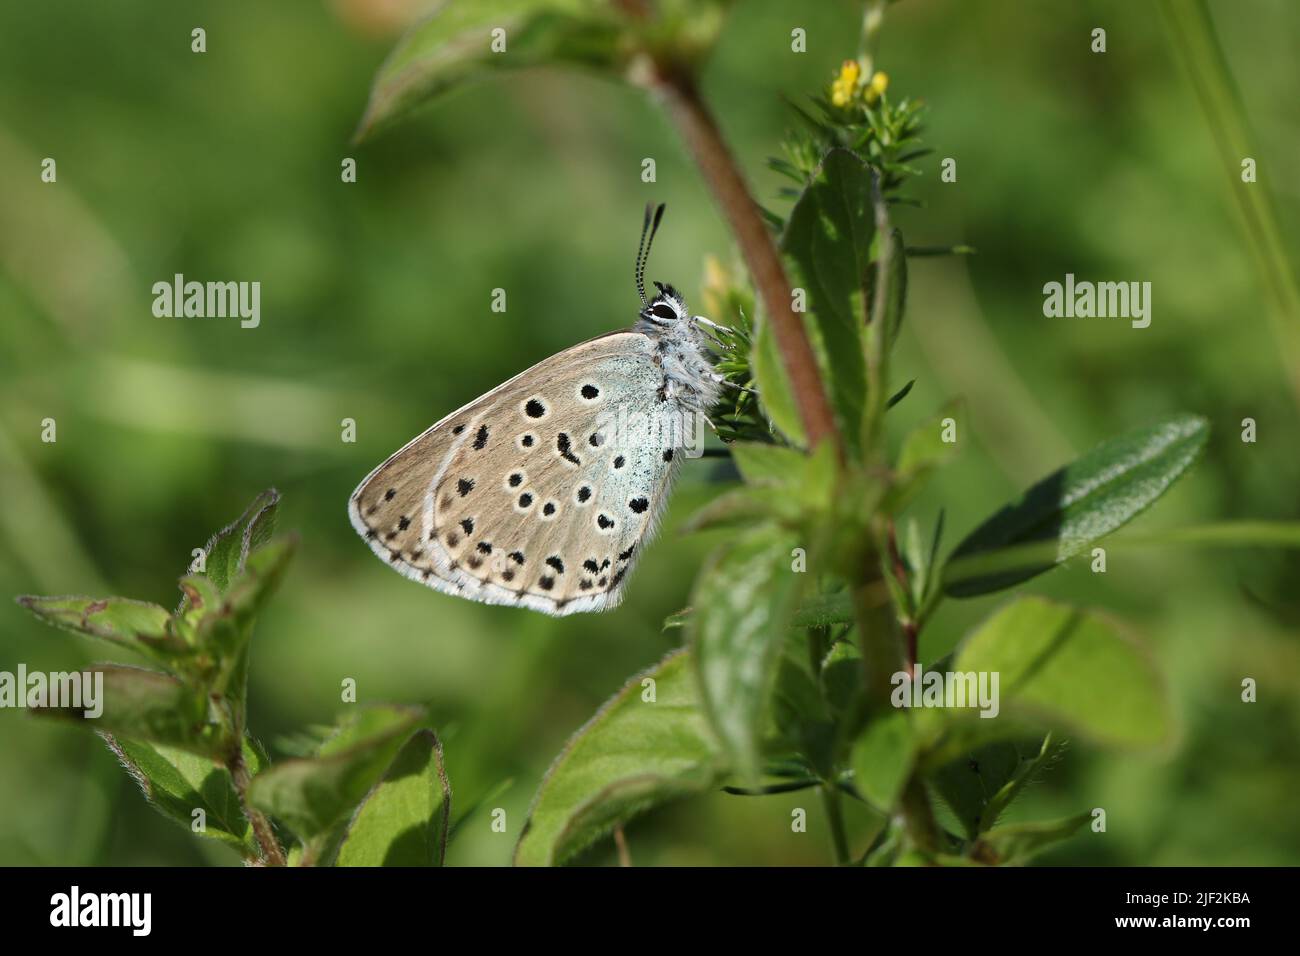 Una rara mariposa azul grande, Phengaris arion, descansando sobre una planta en un prado. Foto de stock